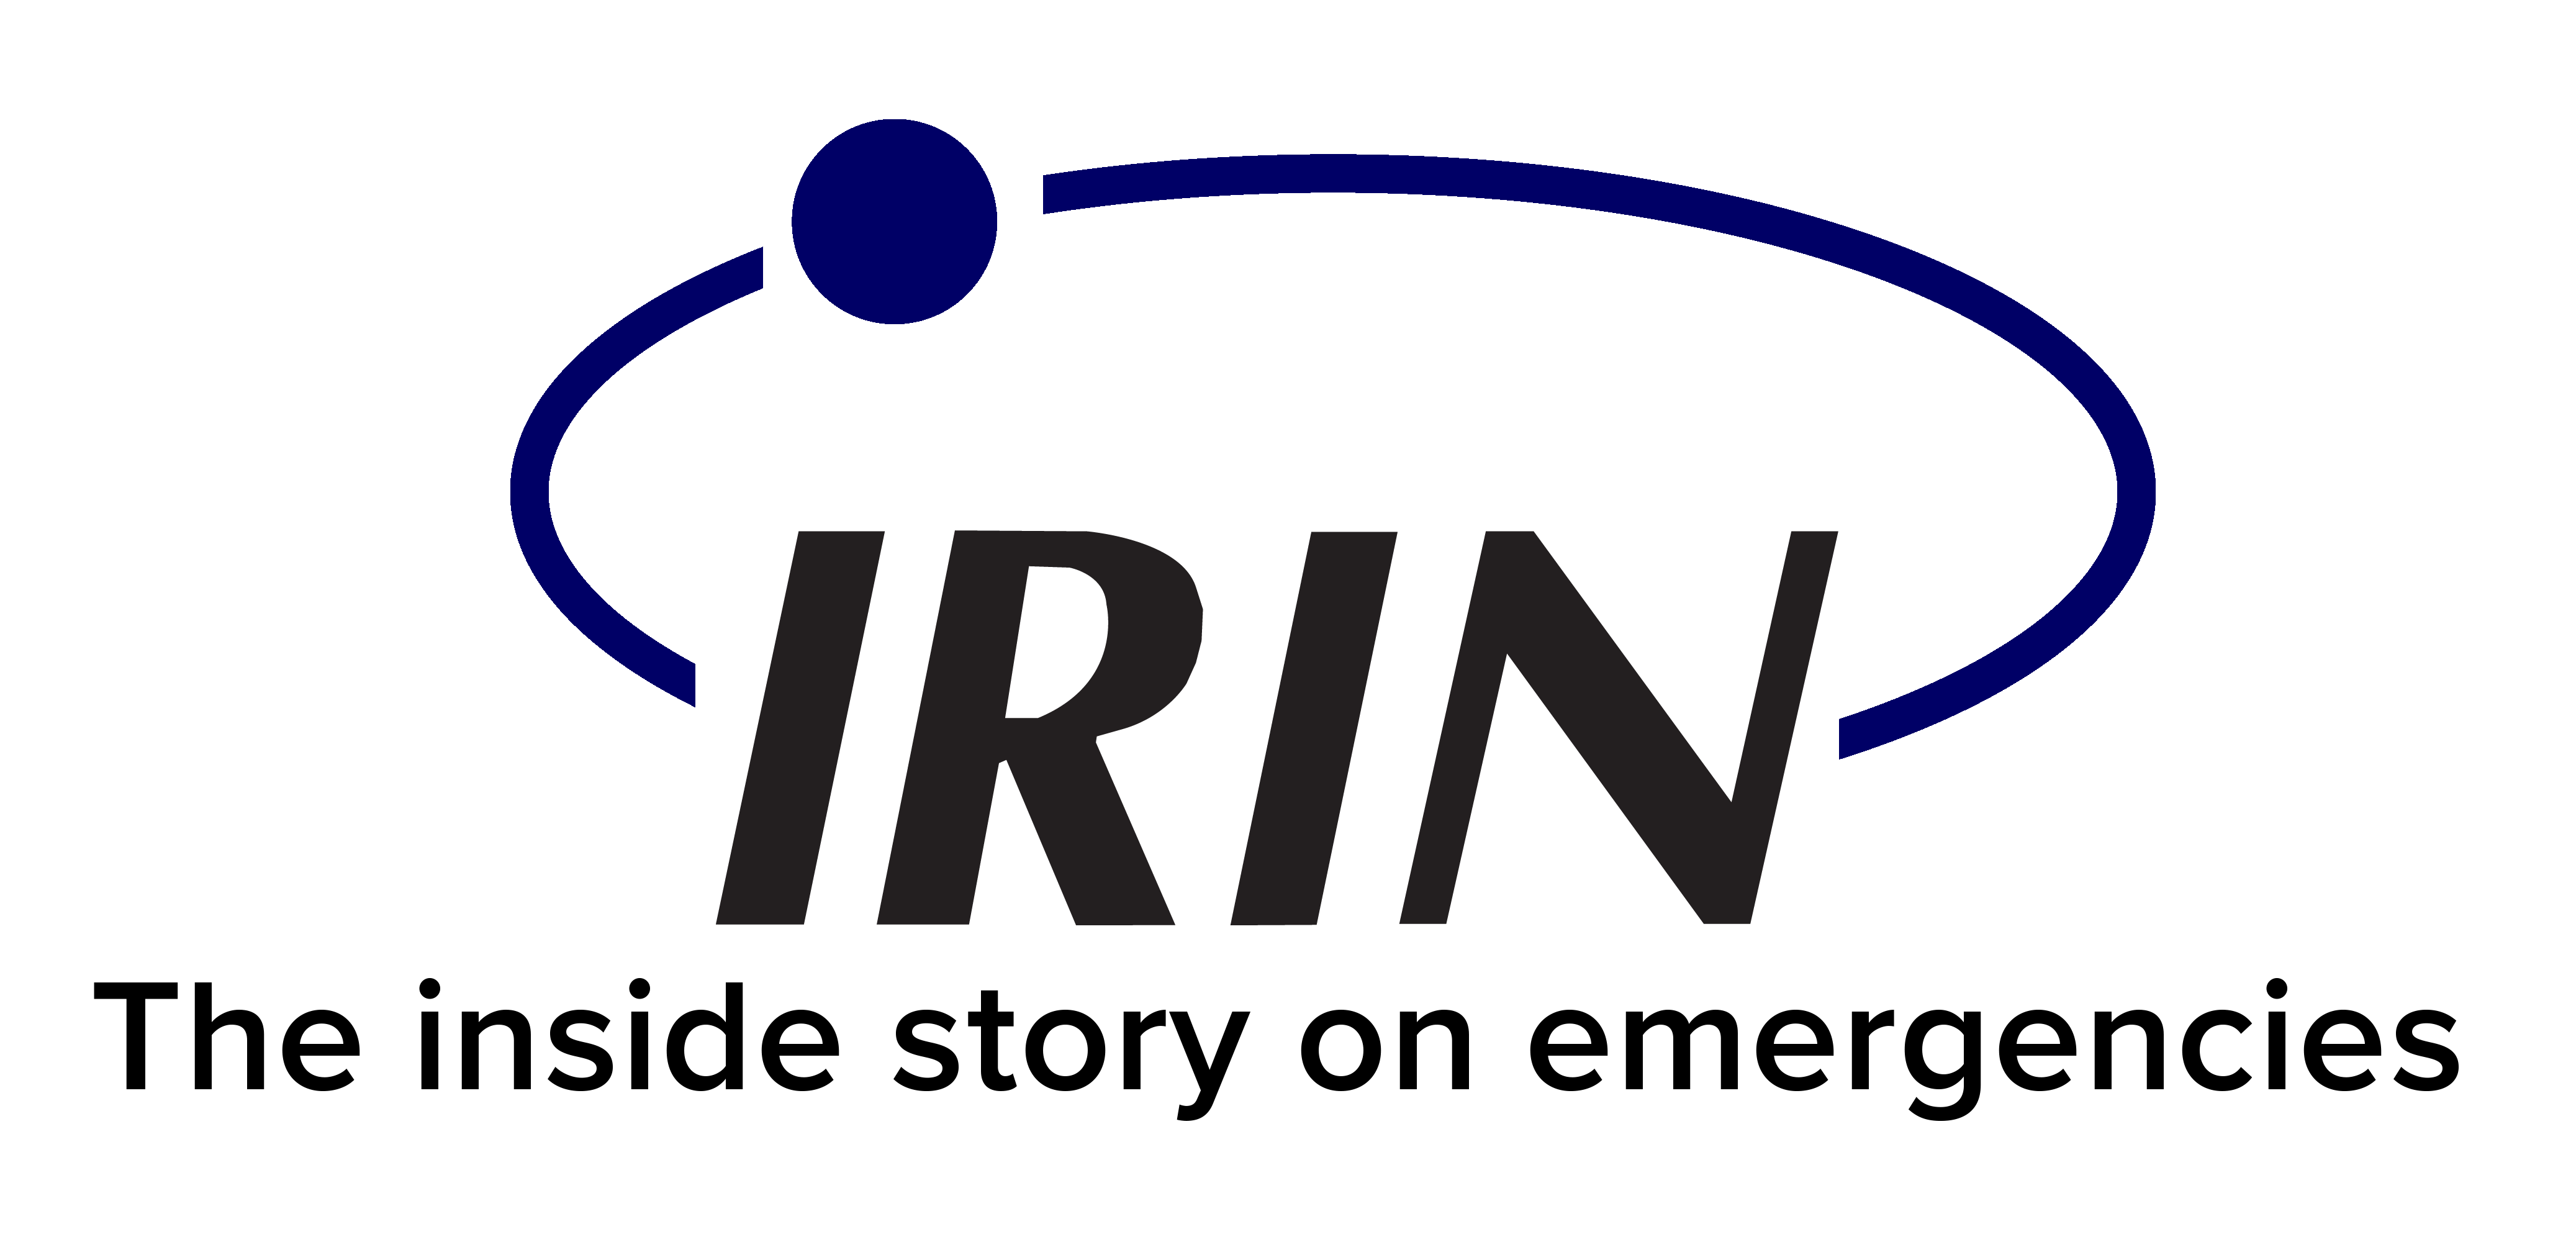 IRIN News